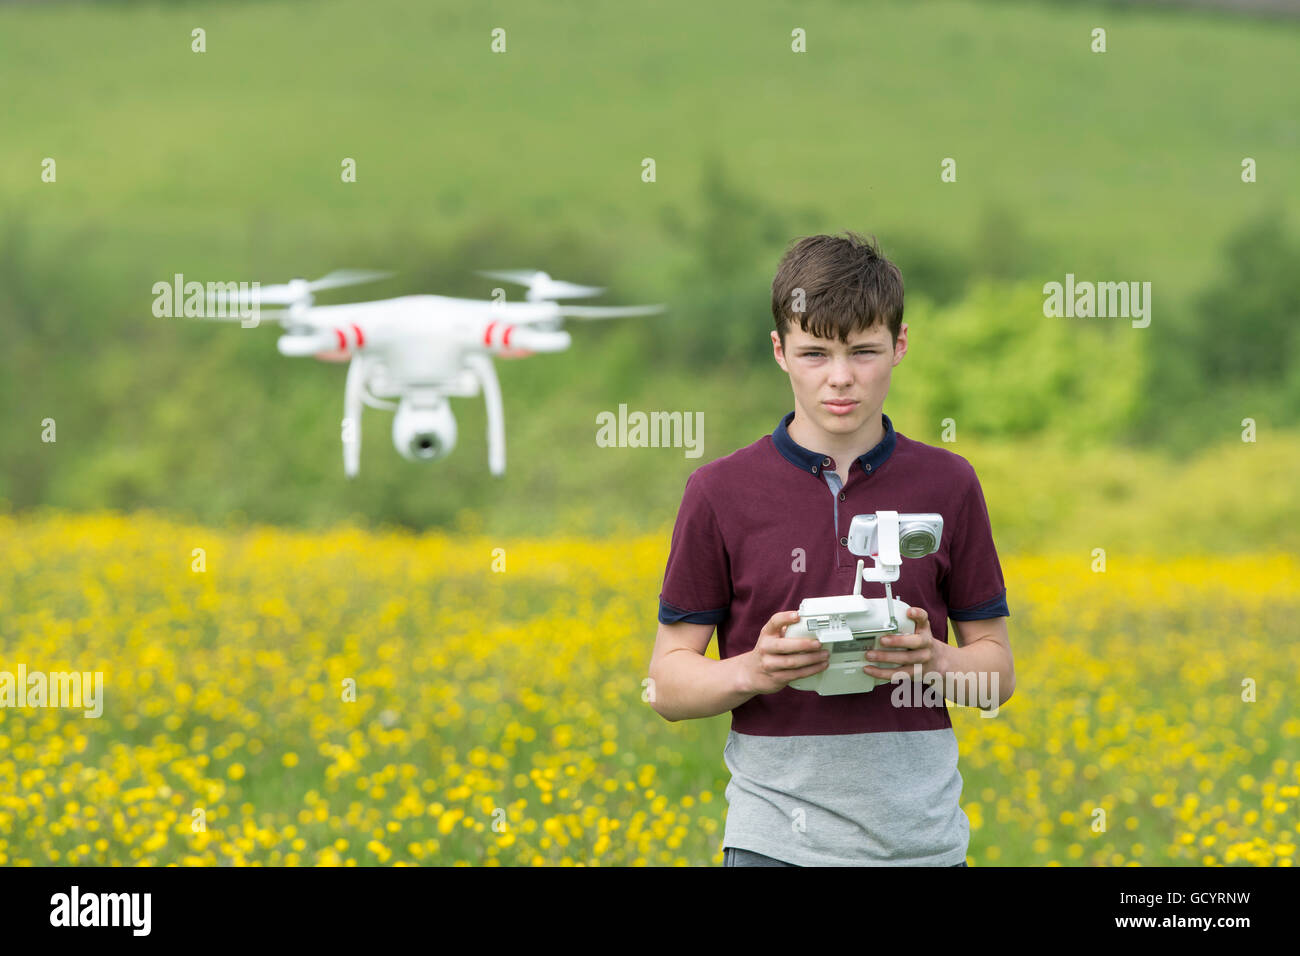 Teenager-Jungen Betrieb eine Quadrocopter Drohne in Landschaft, UK. Stockfoto